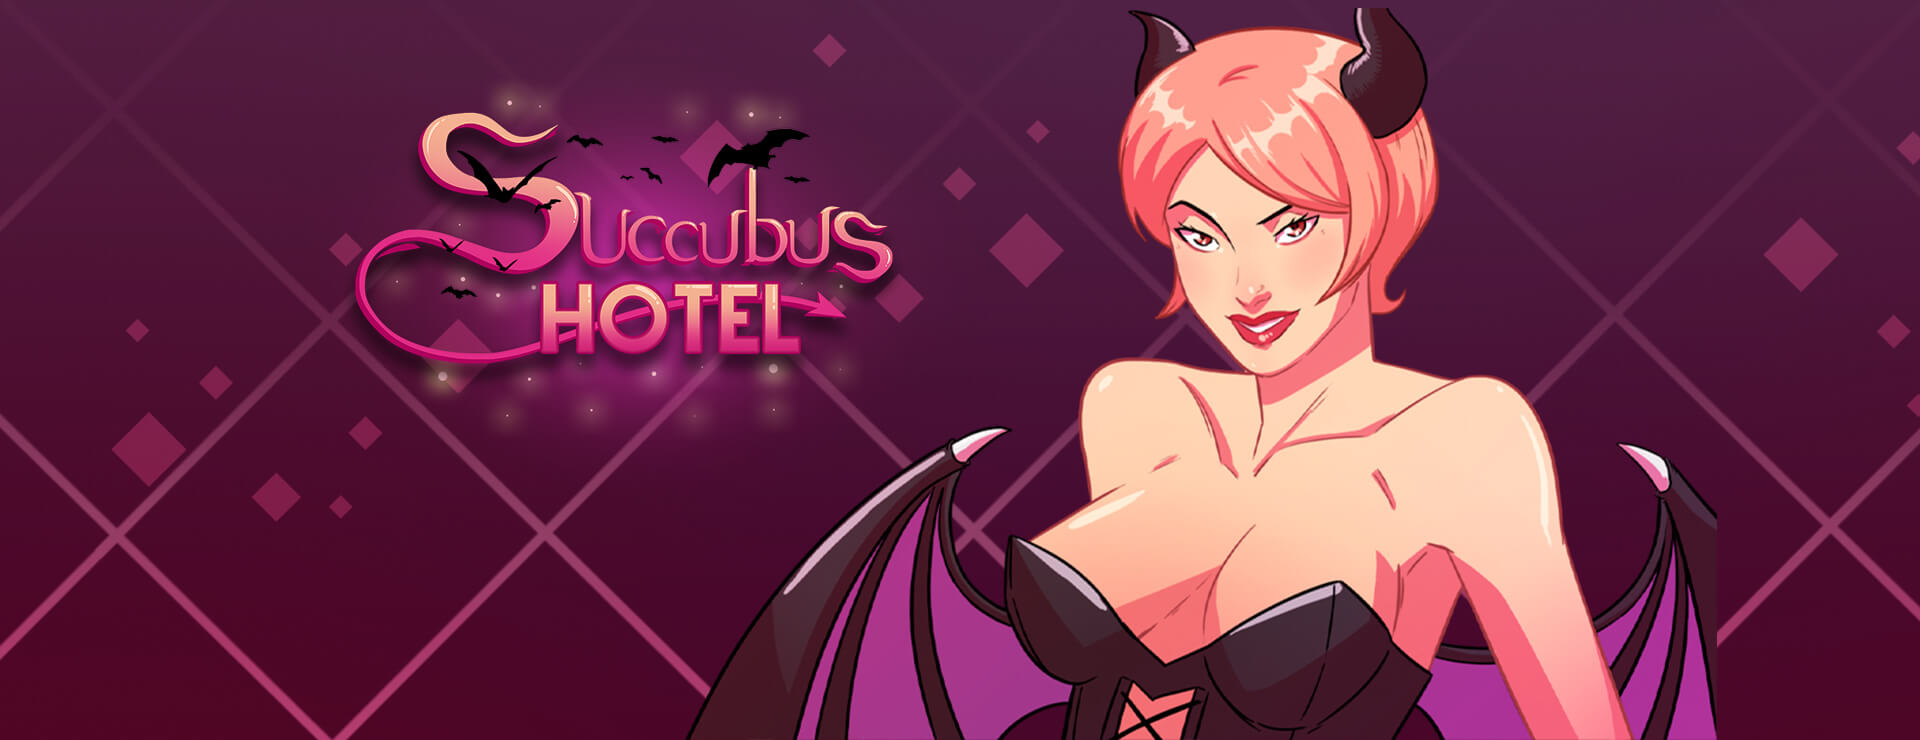 Succubus Hotel - RPG Spiel